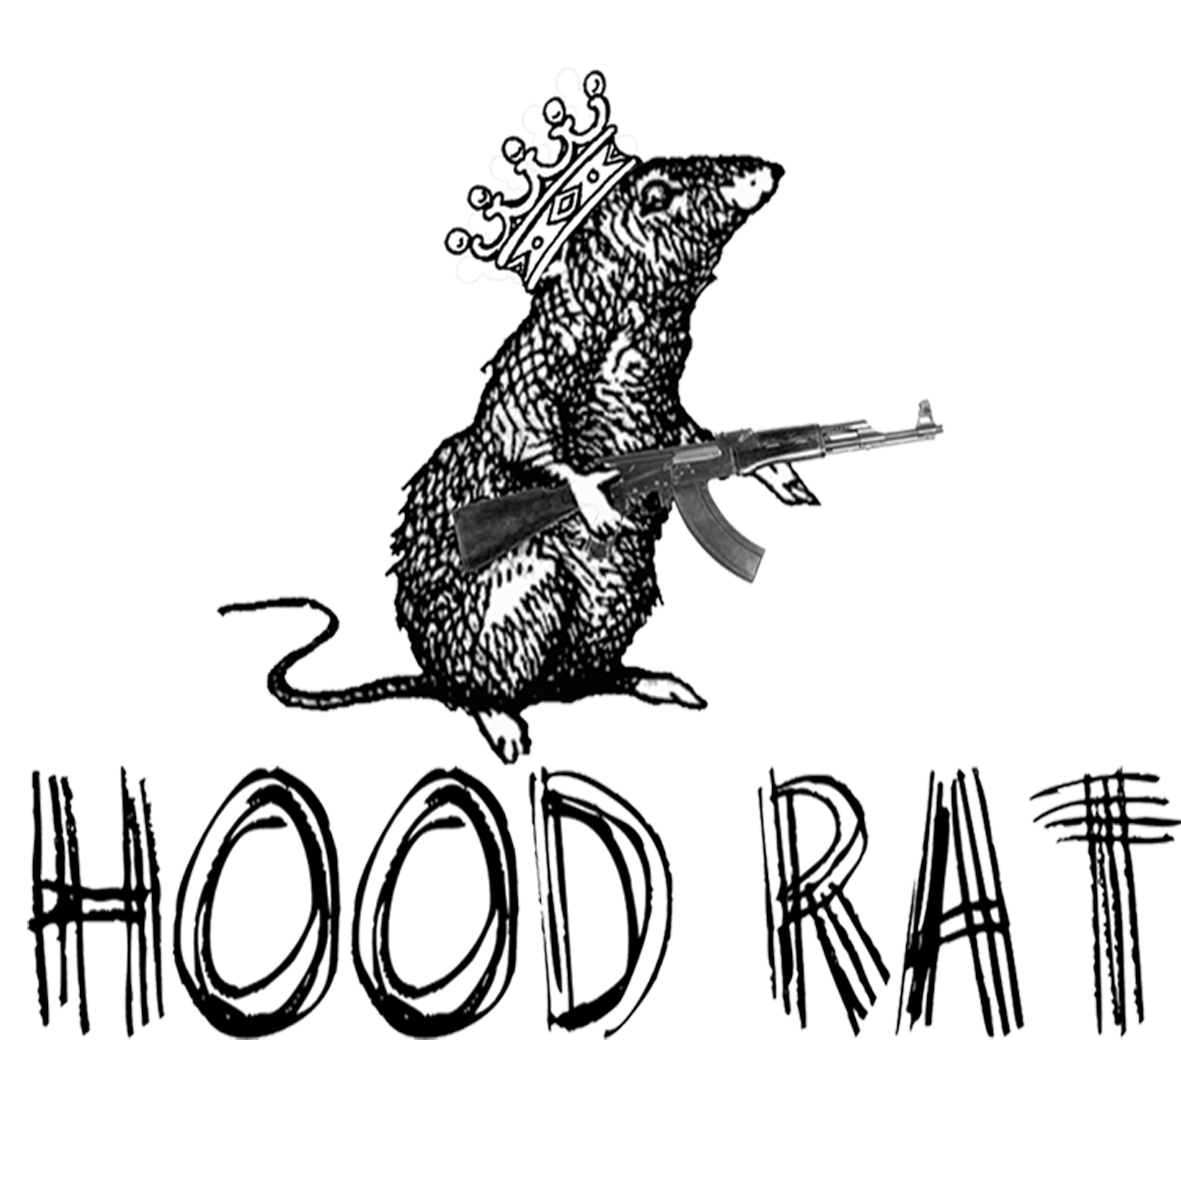 Crystal rat. Крыса логотип. Логотип Рэт. Рисунок крысы логотип. Дарк Кристал rat.